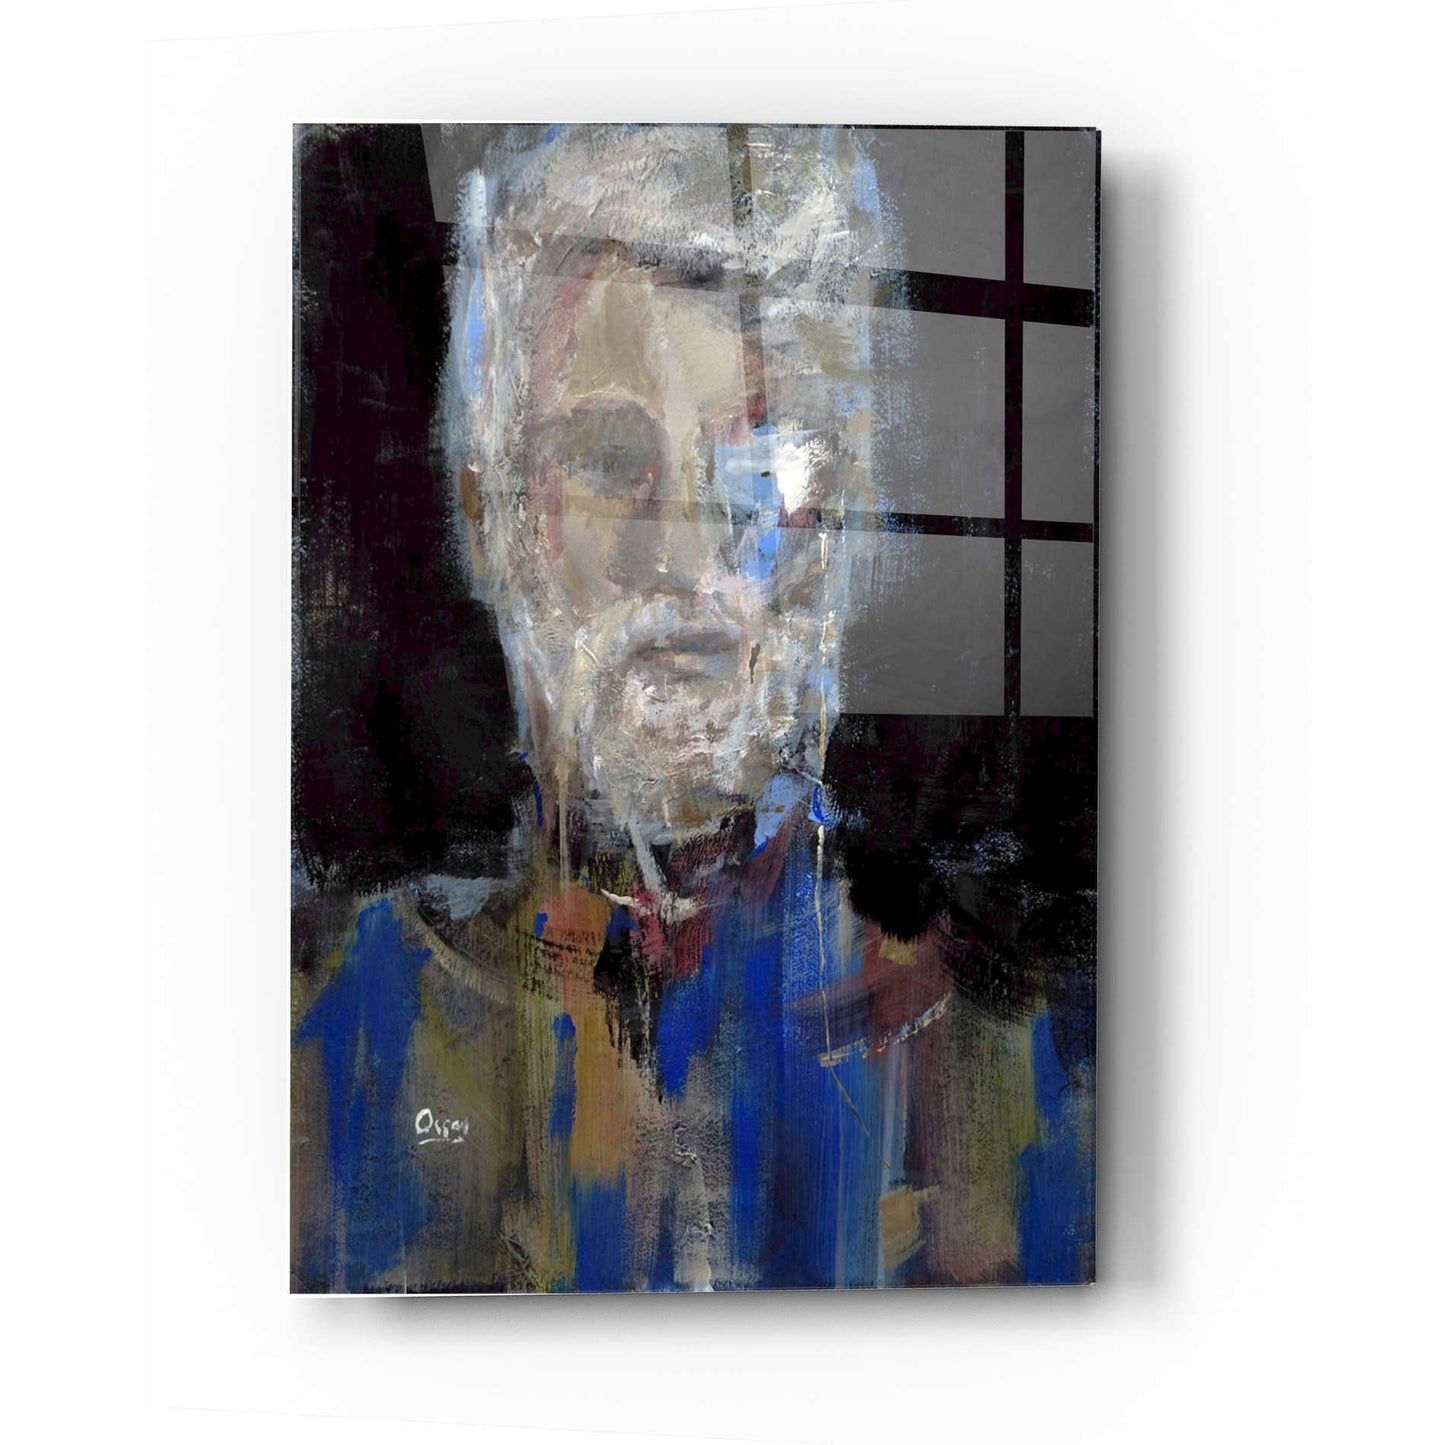 Epic Art 'Portrait 3' by Oscar Alvarez Pardo, Acrylic Glass Wall Art,16x24